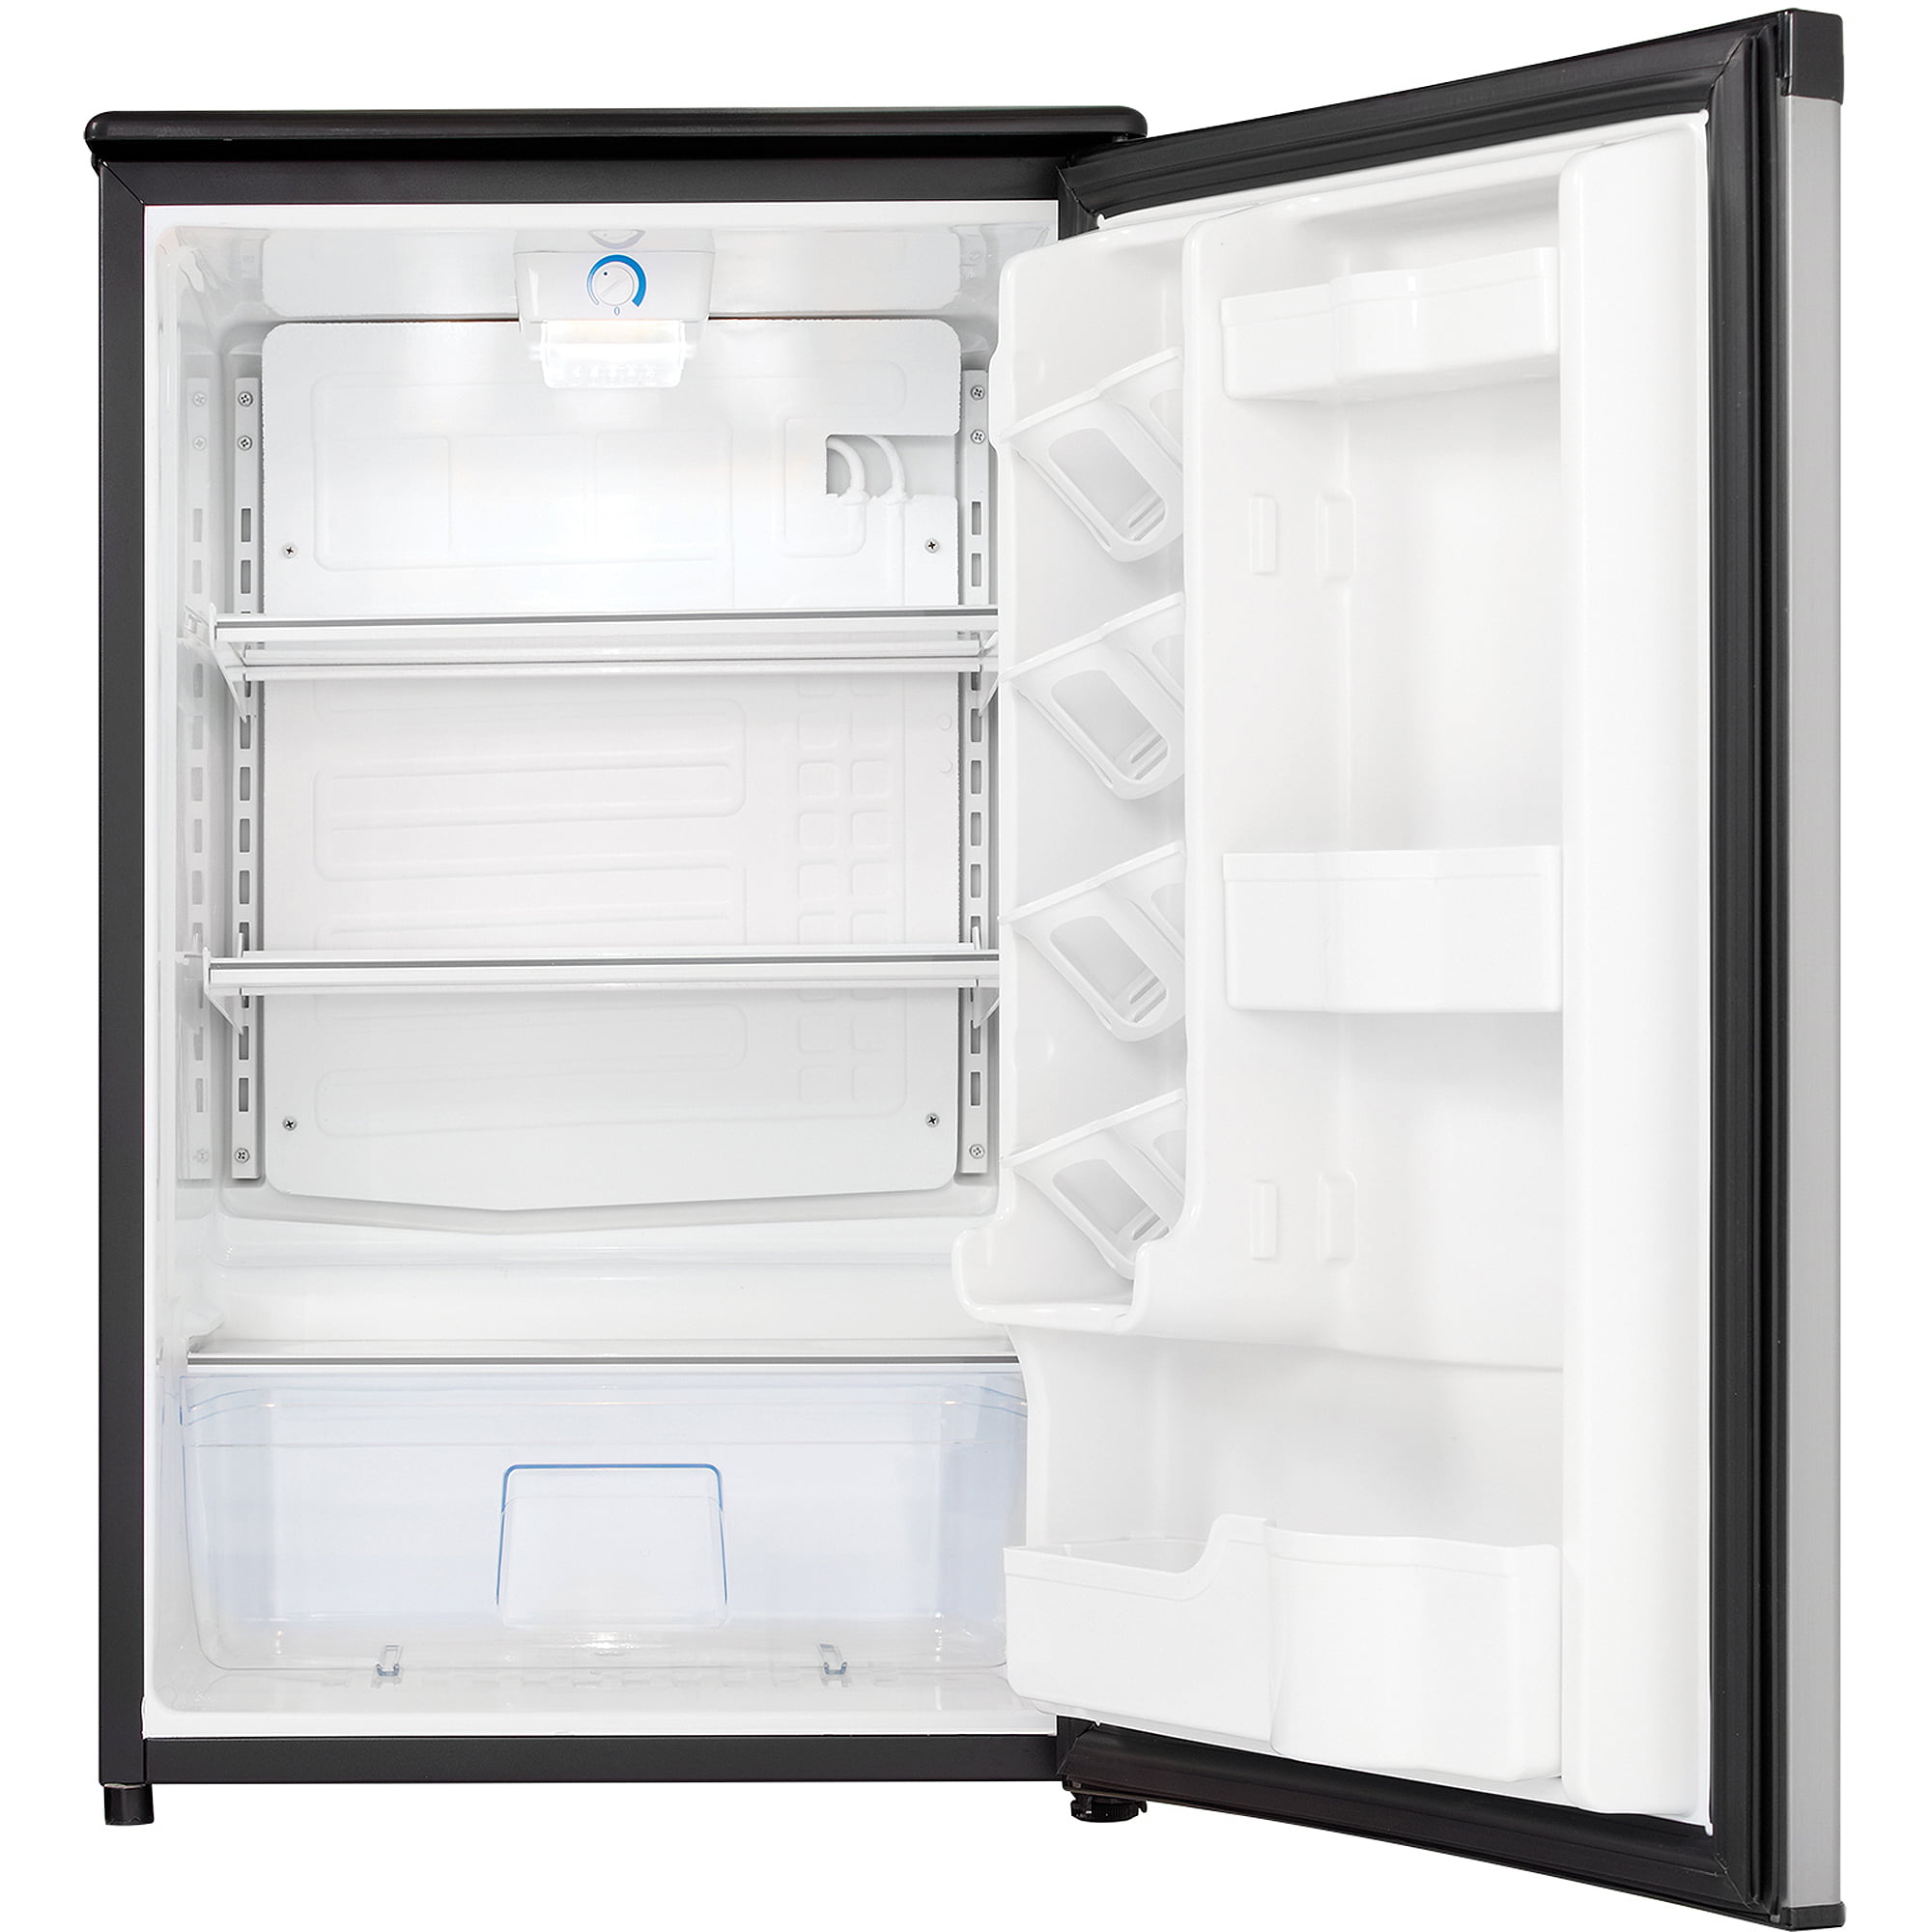 Danby Designer 4 4 Cu Ft Compact All Refrigerator Spotless Silver Walmart Com Walmart Com